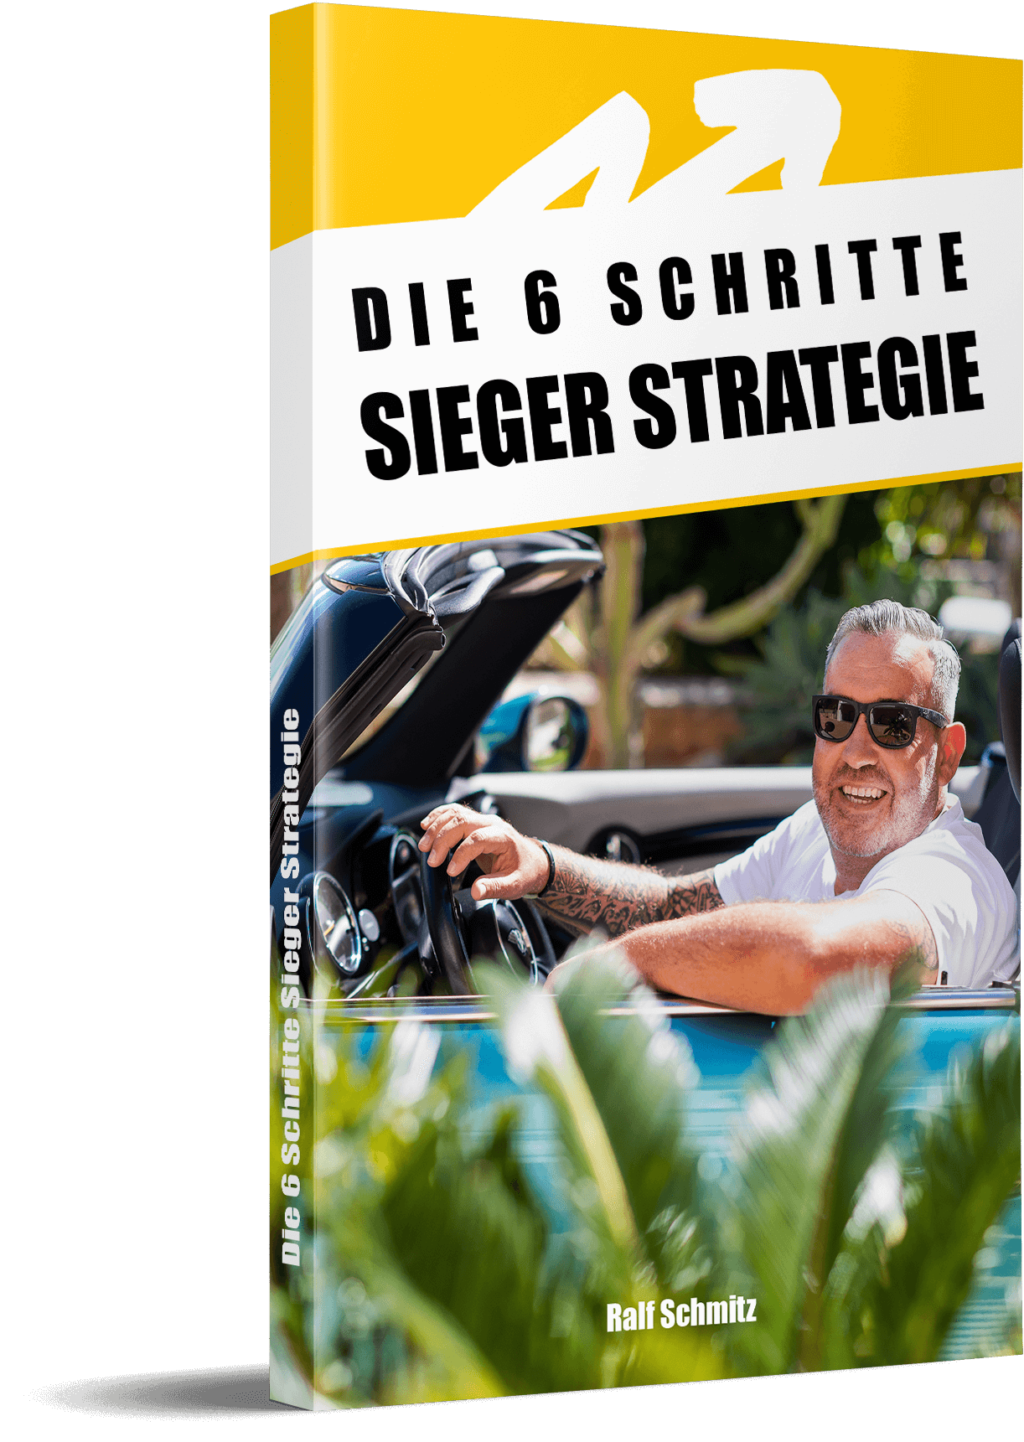 https://6schrittestrategie.stefangeiger.de/